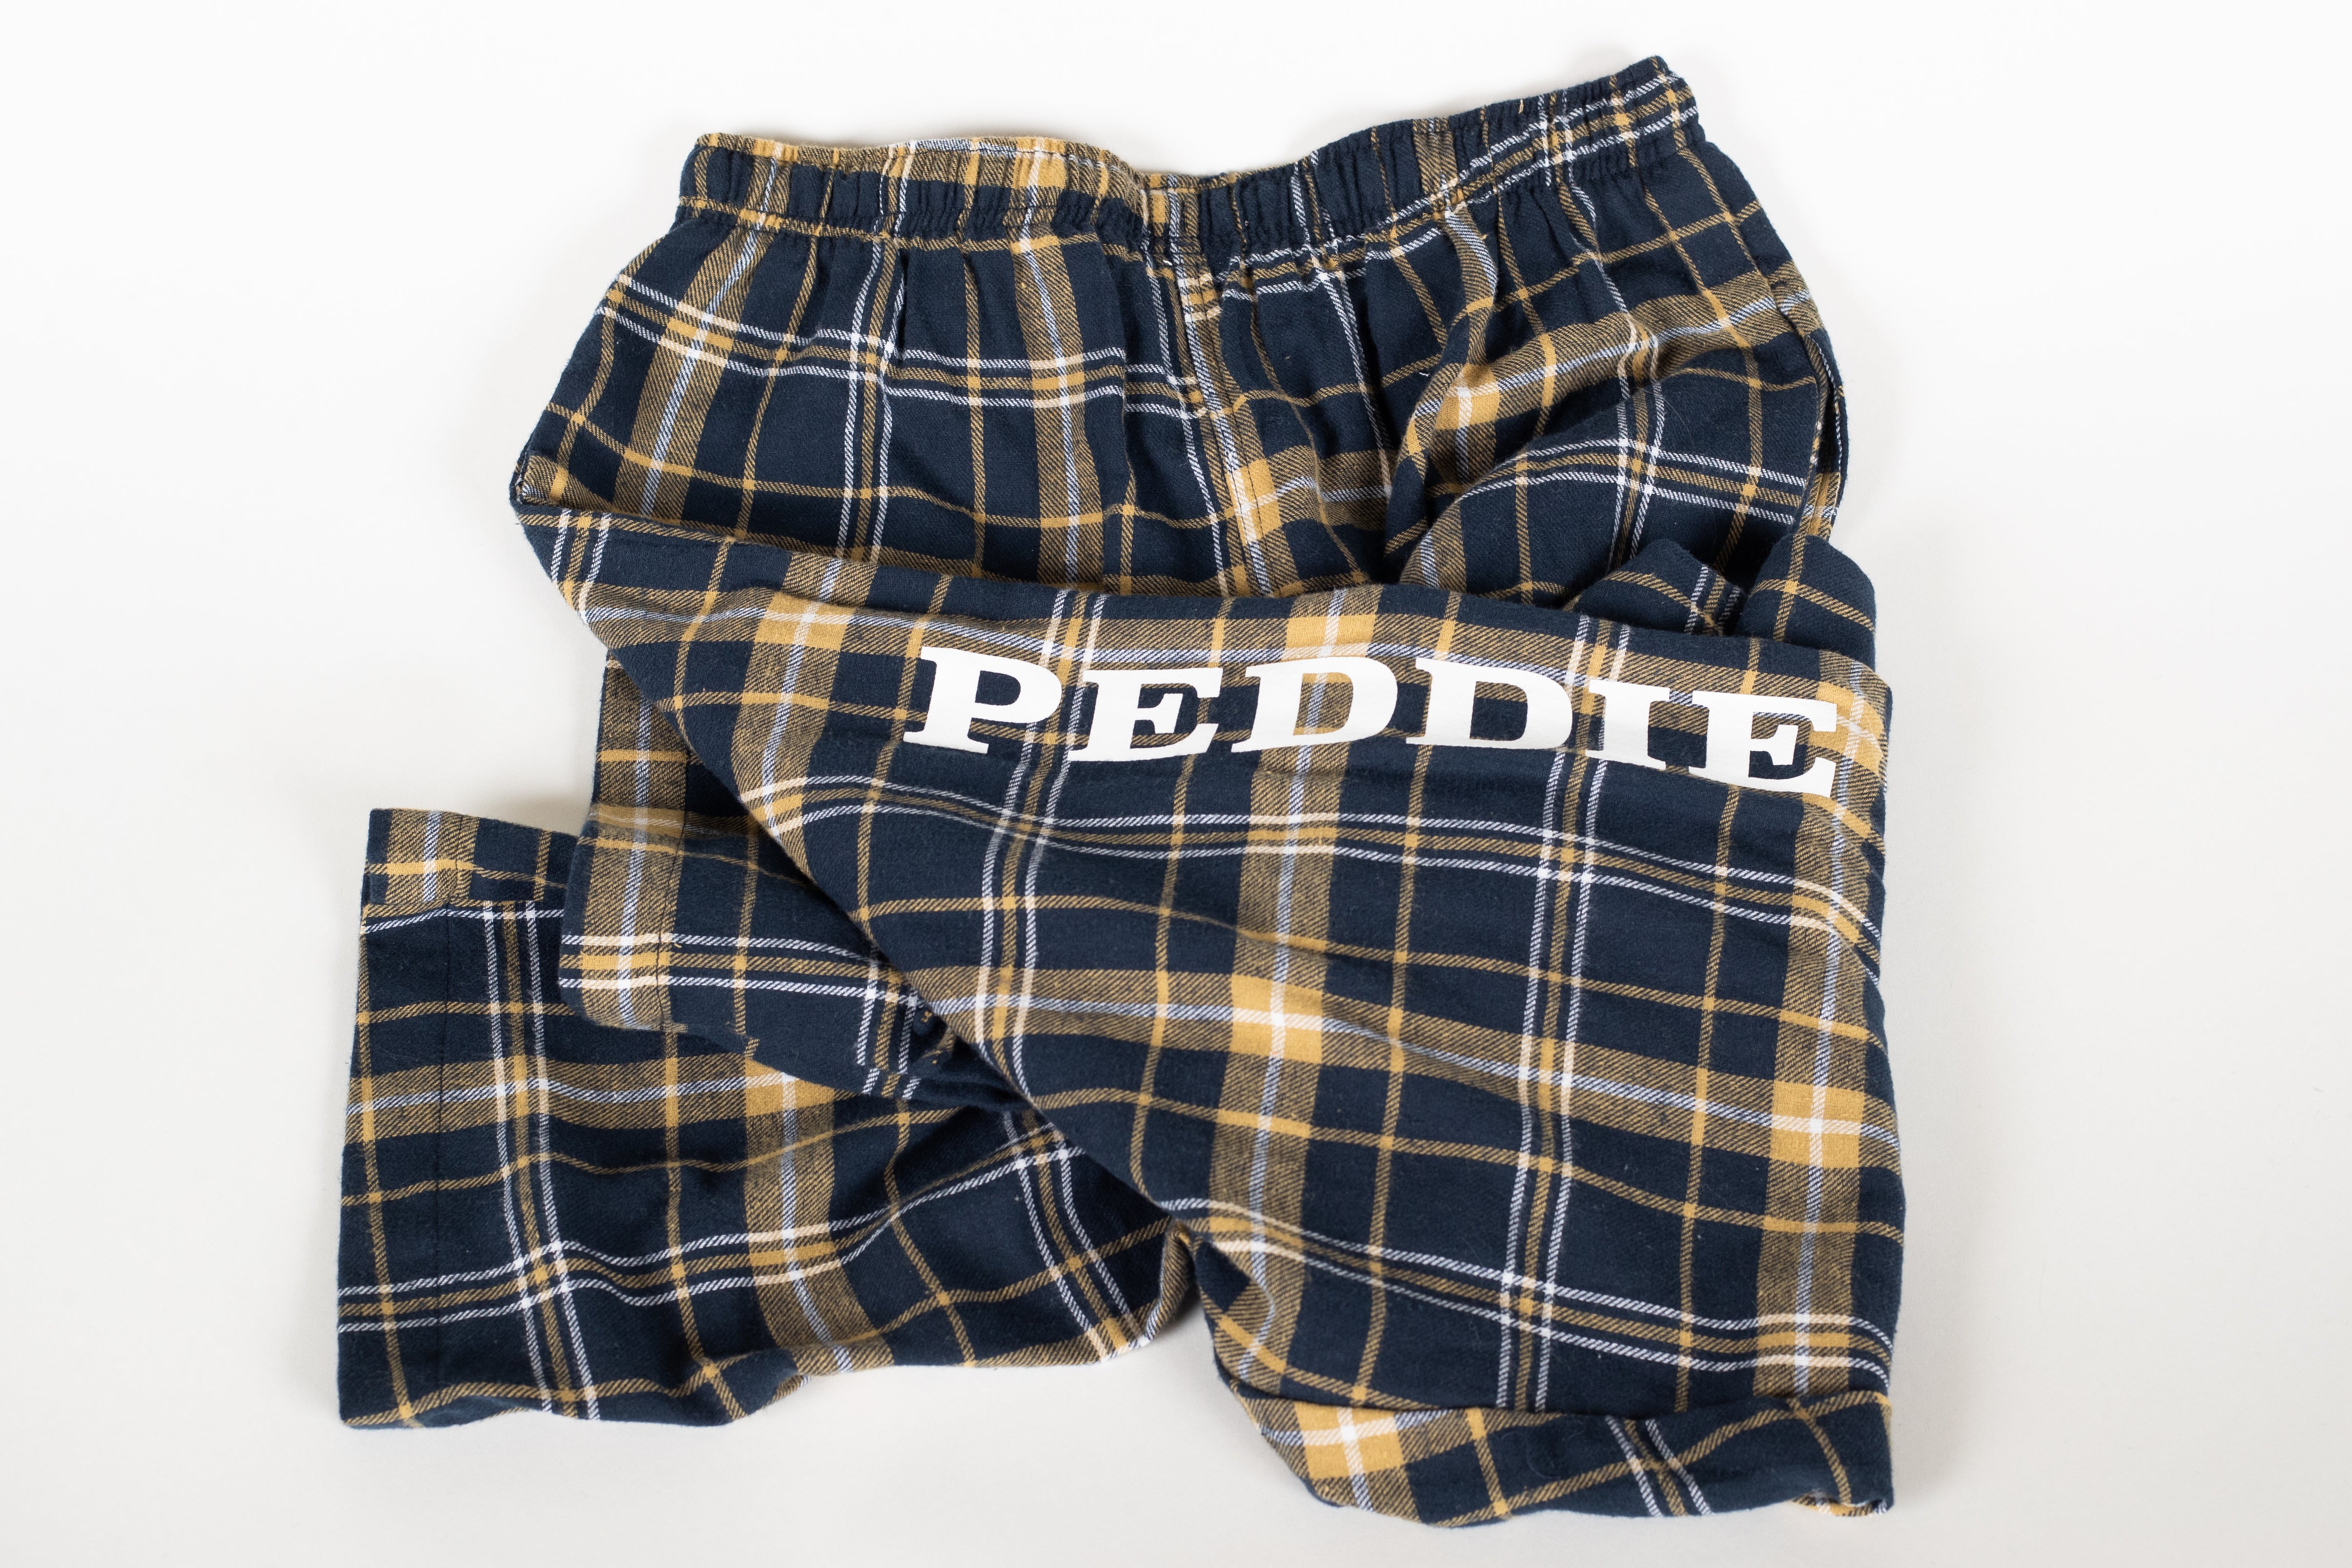 Peddie Flannel Pajama Pants